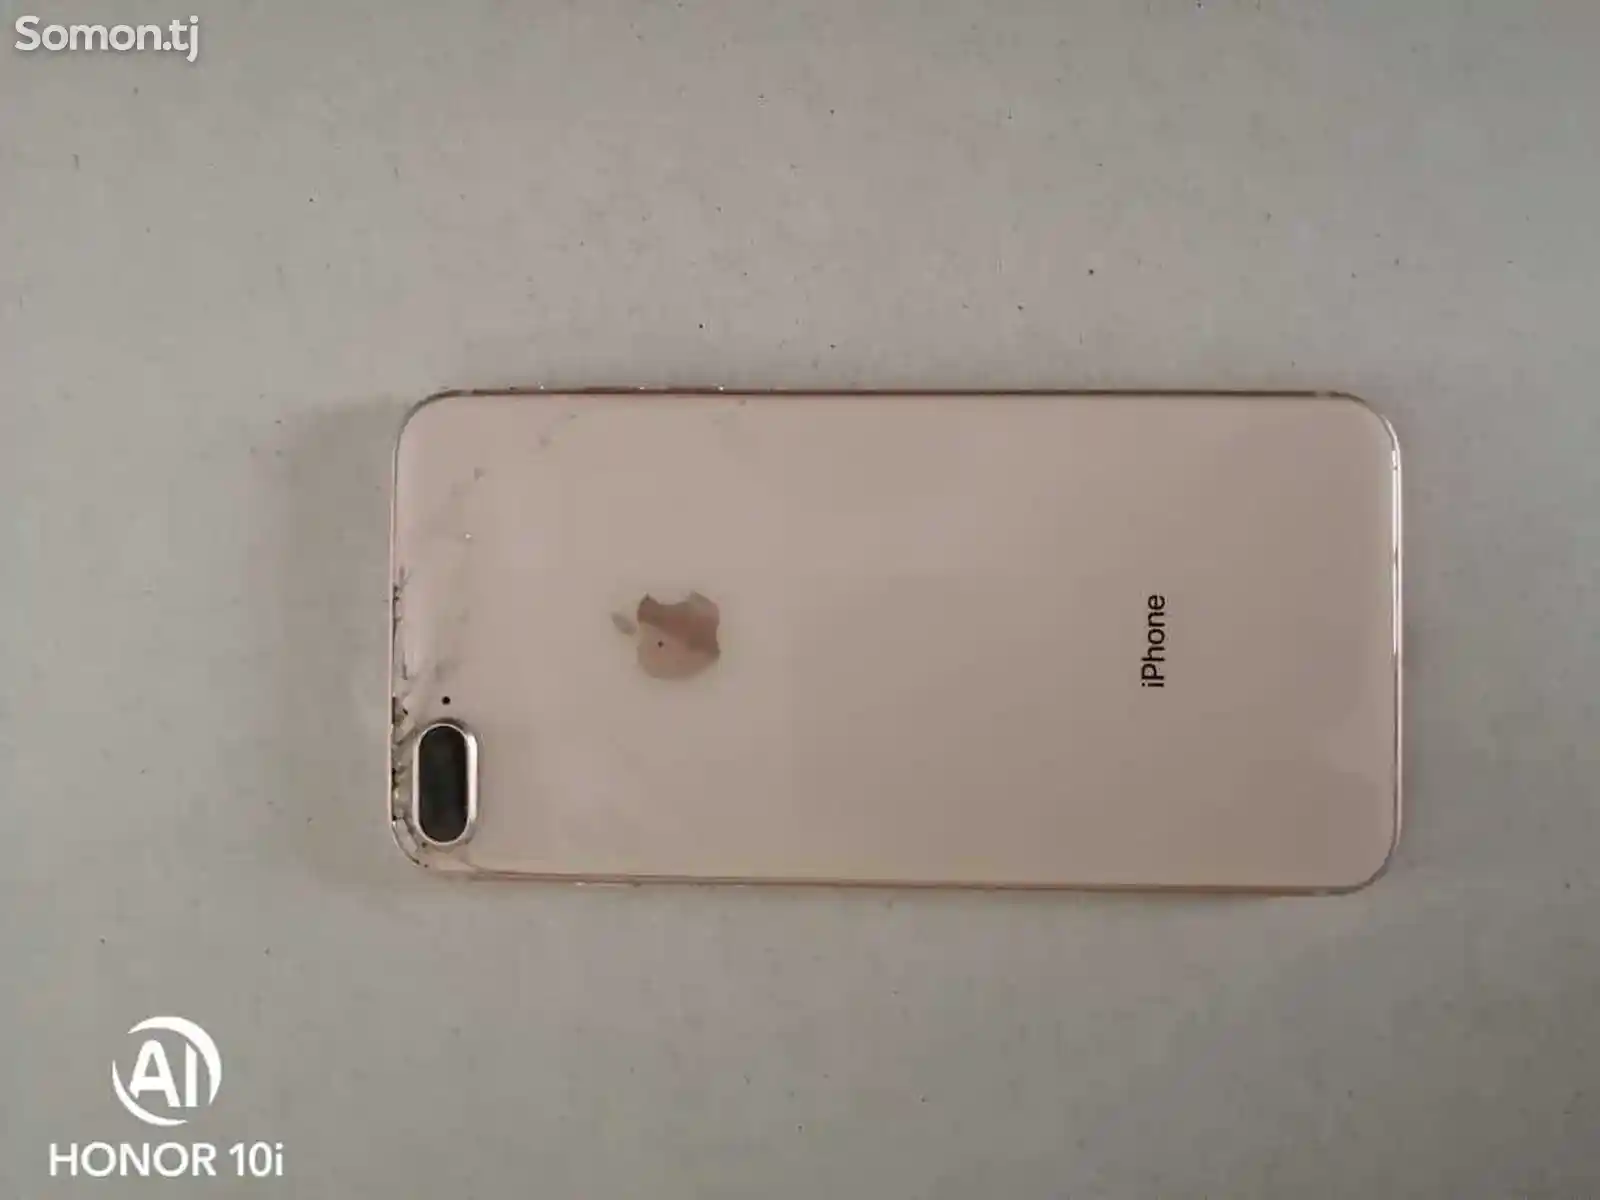 Apple iPhone 8 plus, 64 gb, Gold-3